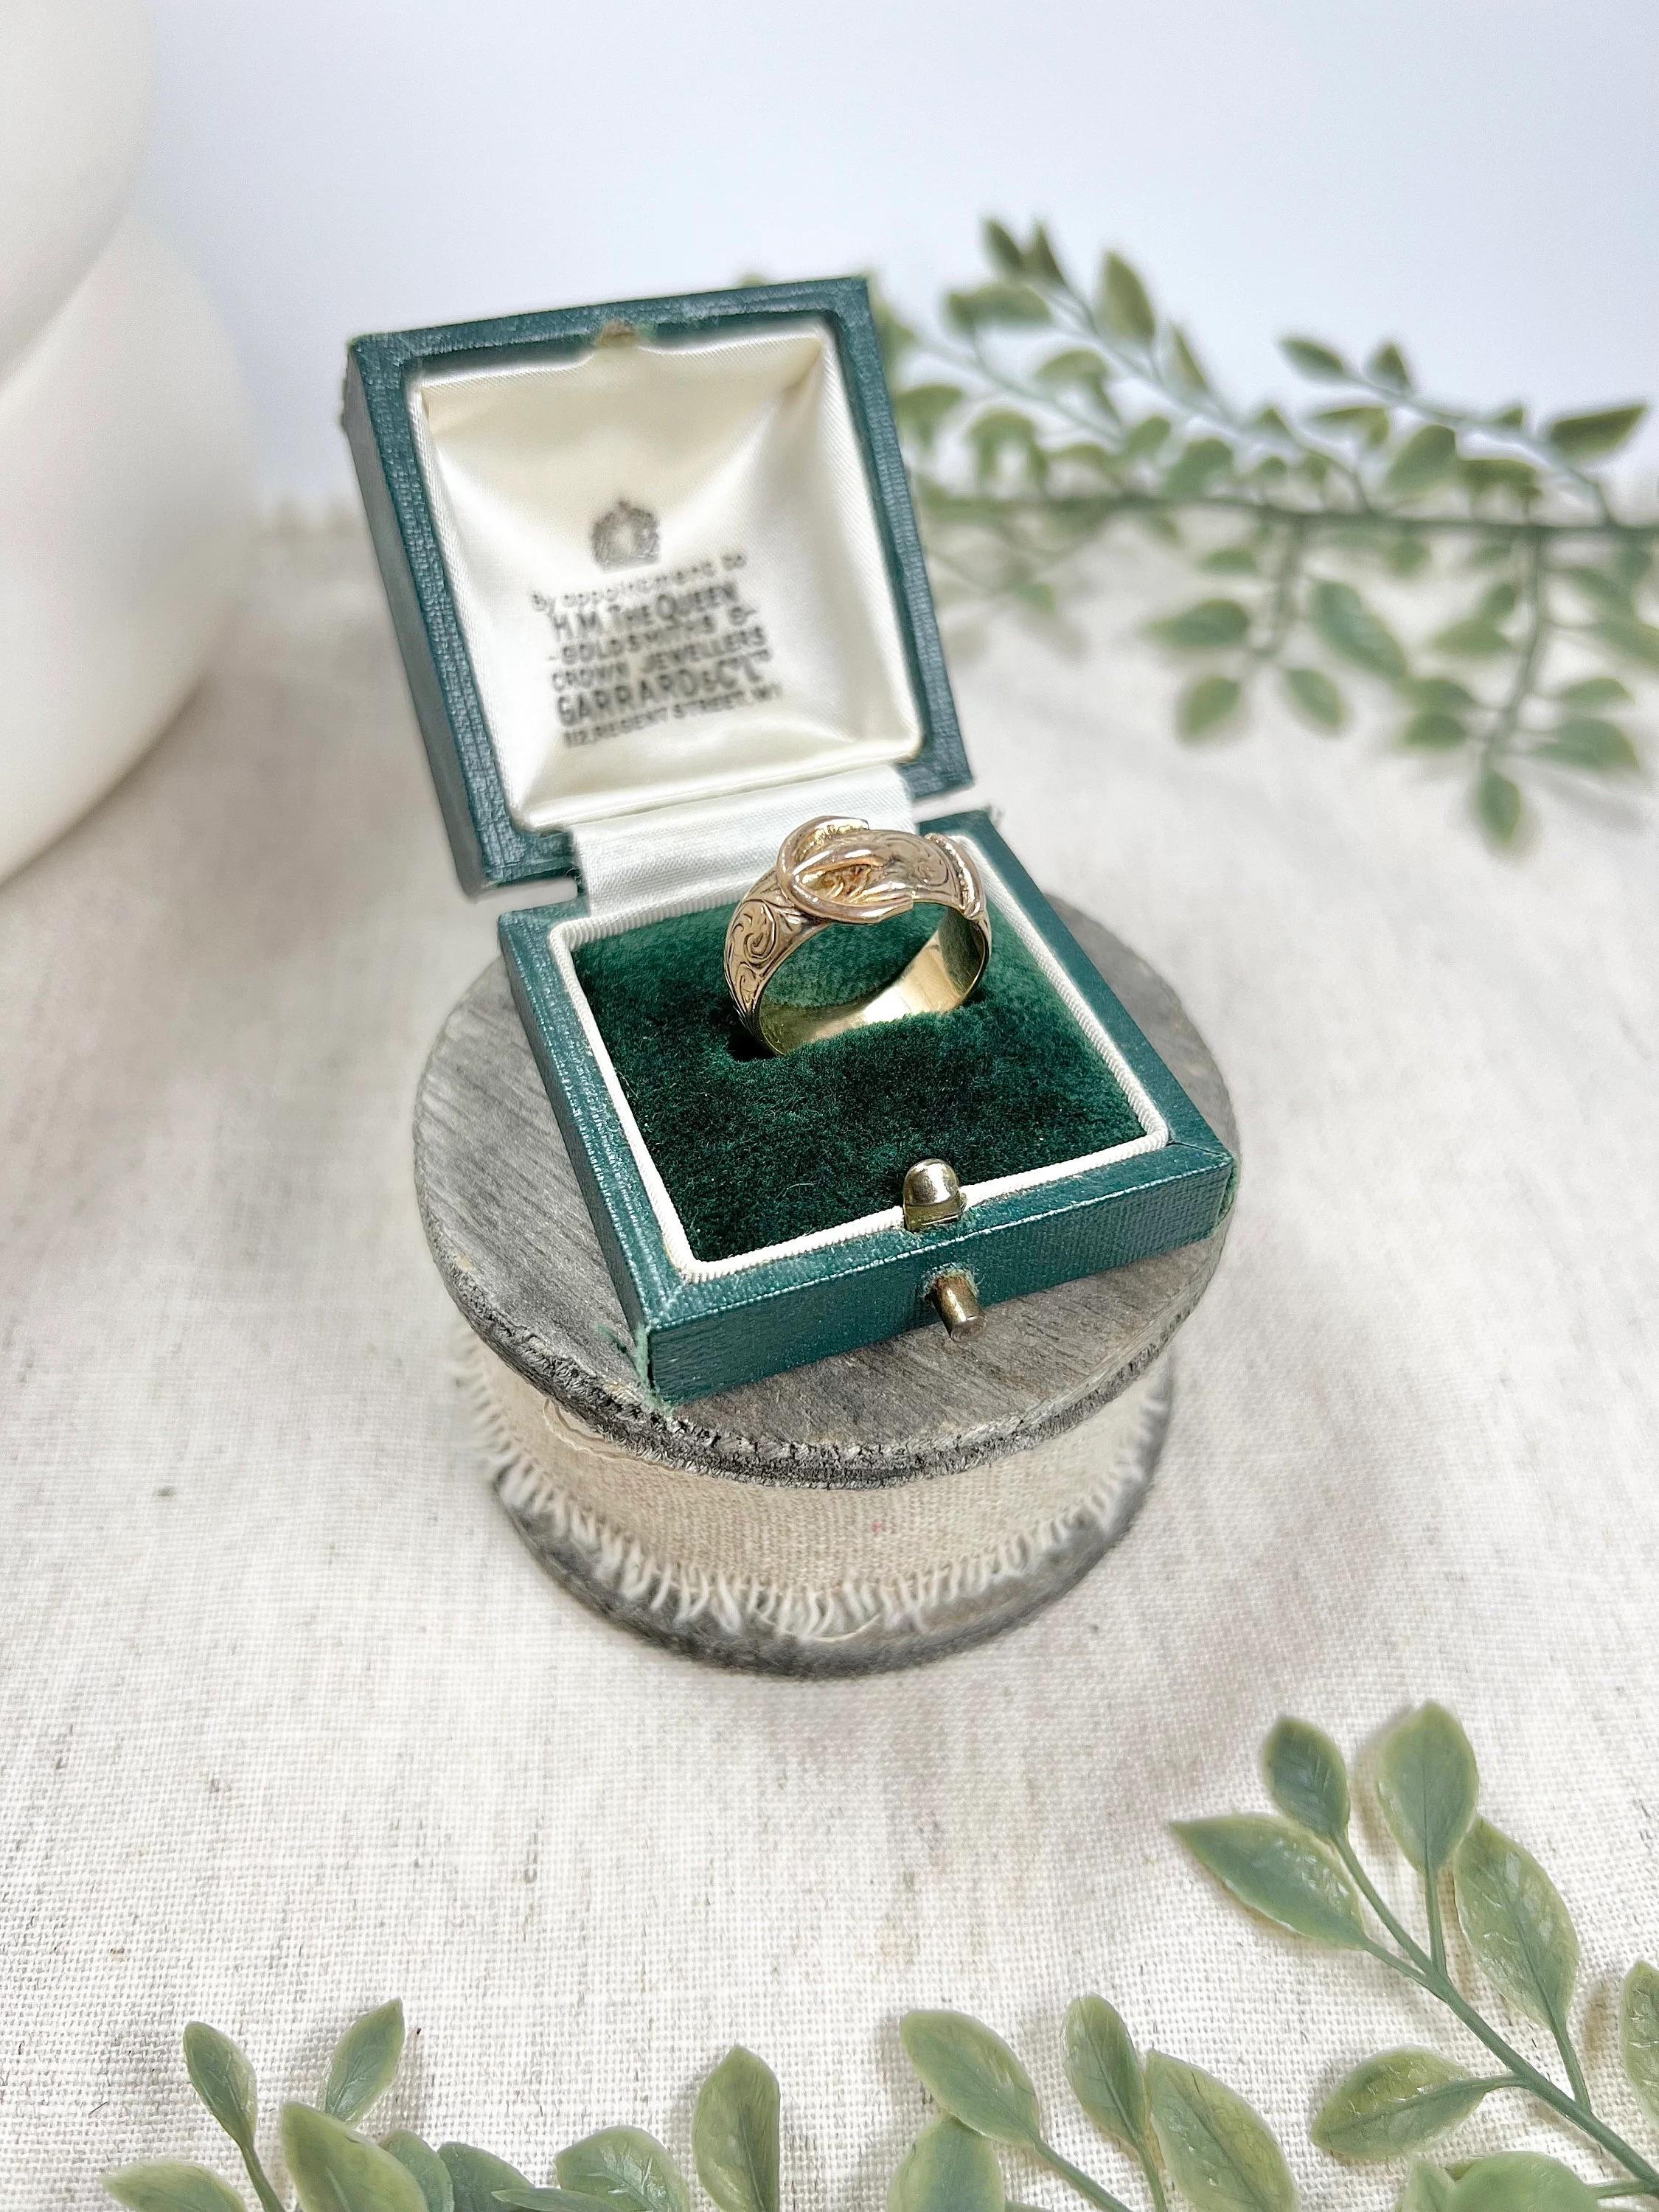 Vintage Schnalle Ring 

9ct Gelbgold 

Gepunzt London 1977

Herstellerzeichen L W & G 

Hübscher Ring mit Schnalle im Vintage-Stil und schönen Paisley-Details. Die Schnalle ist seit langem ein Symbol für ewige Liebe, Treue und Loyalität, da der